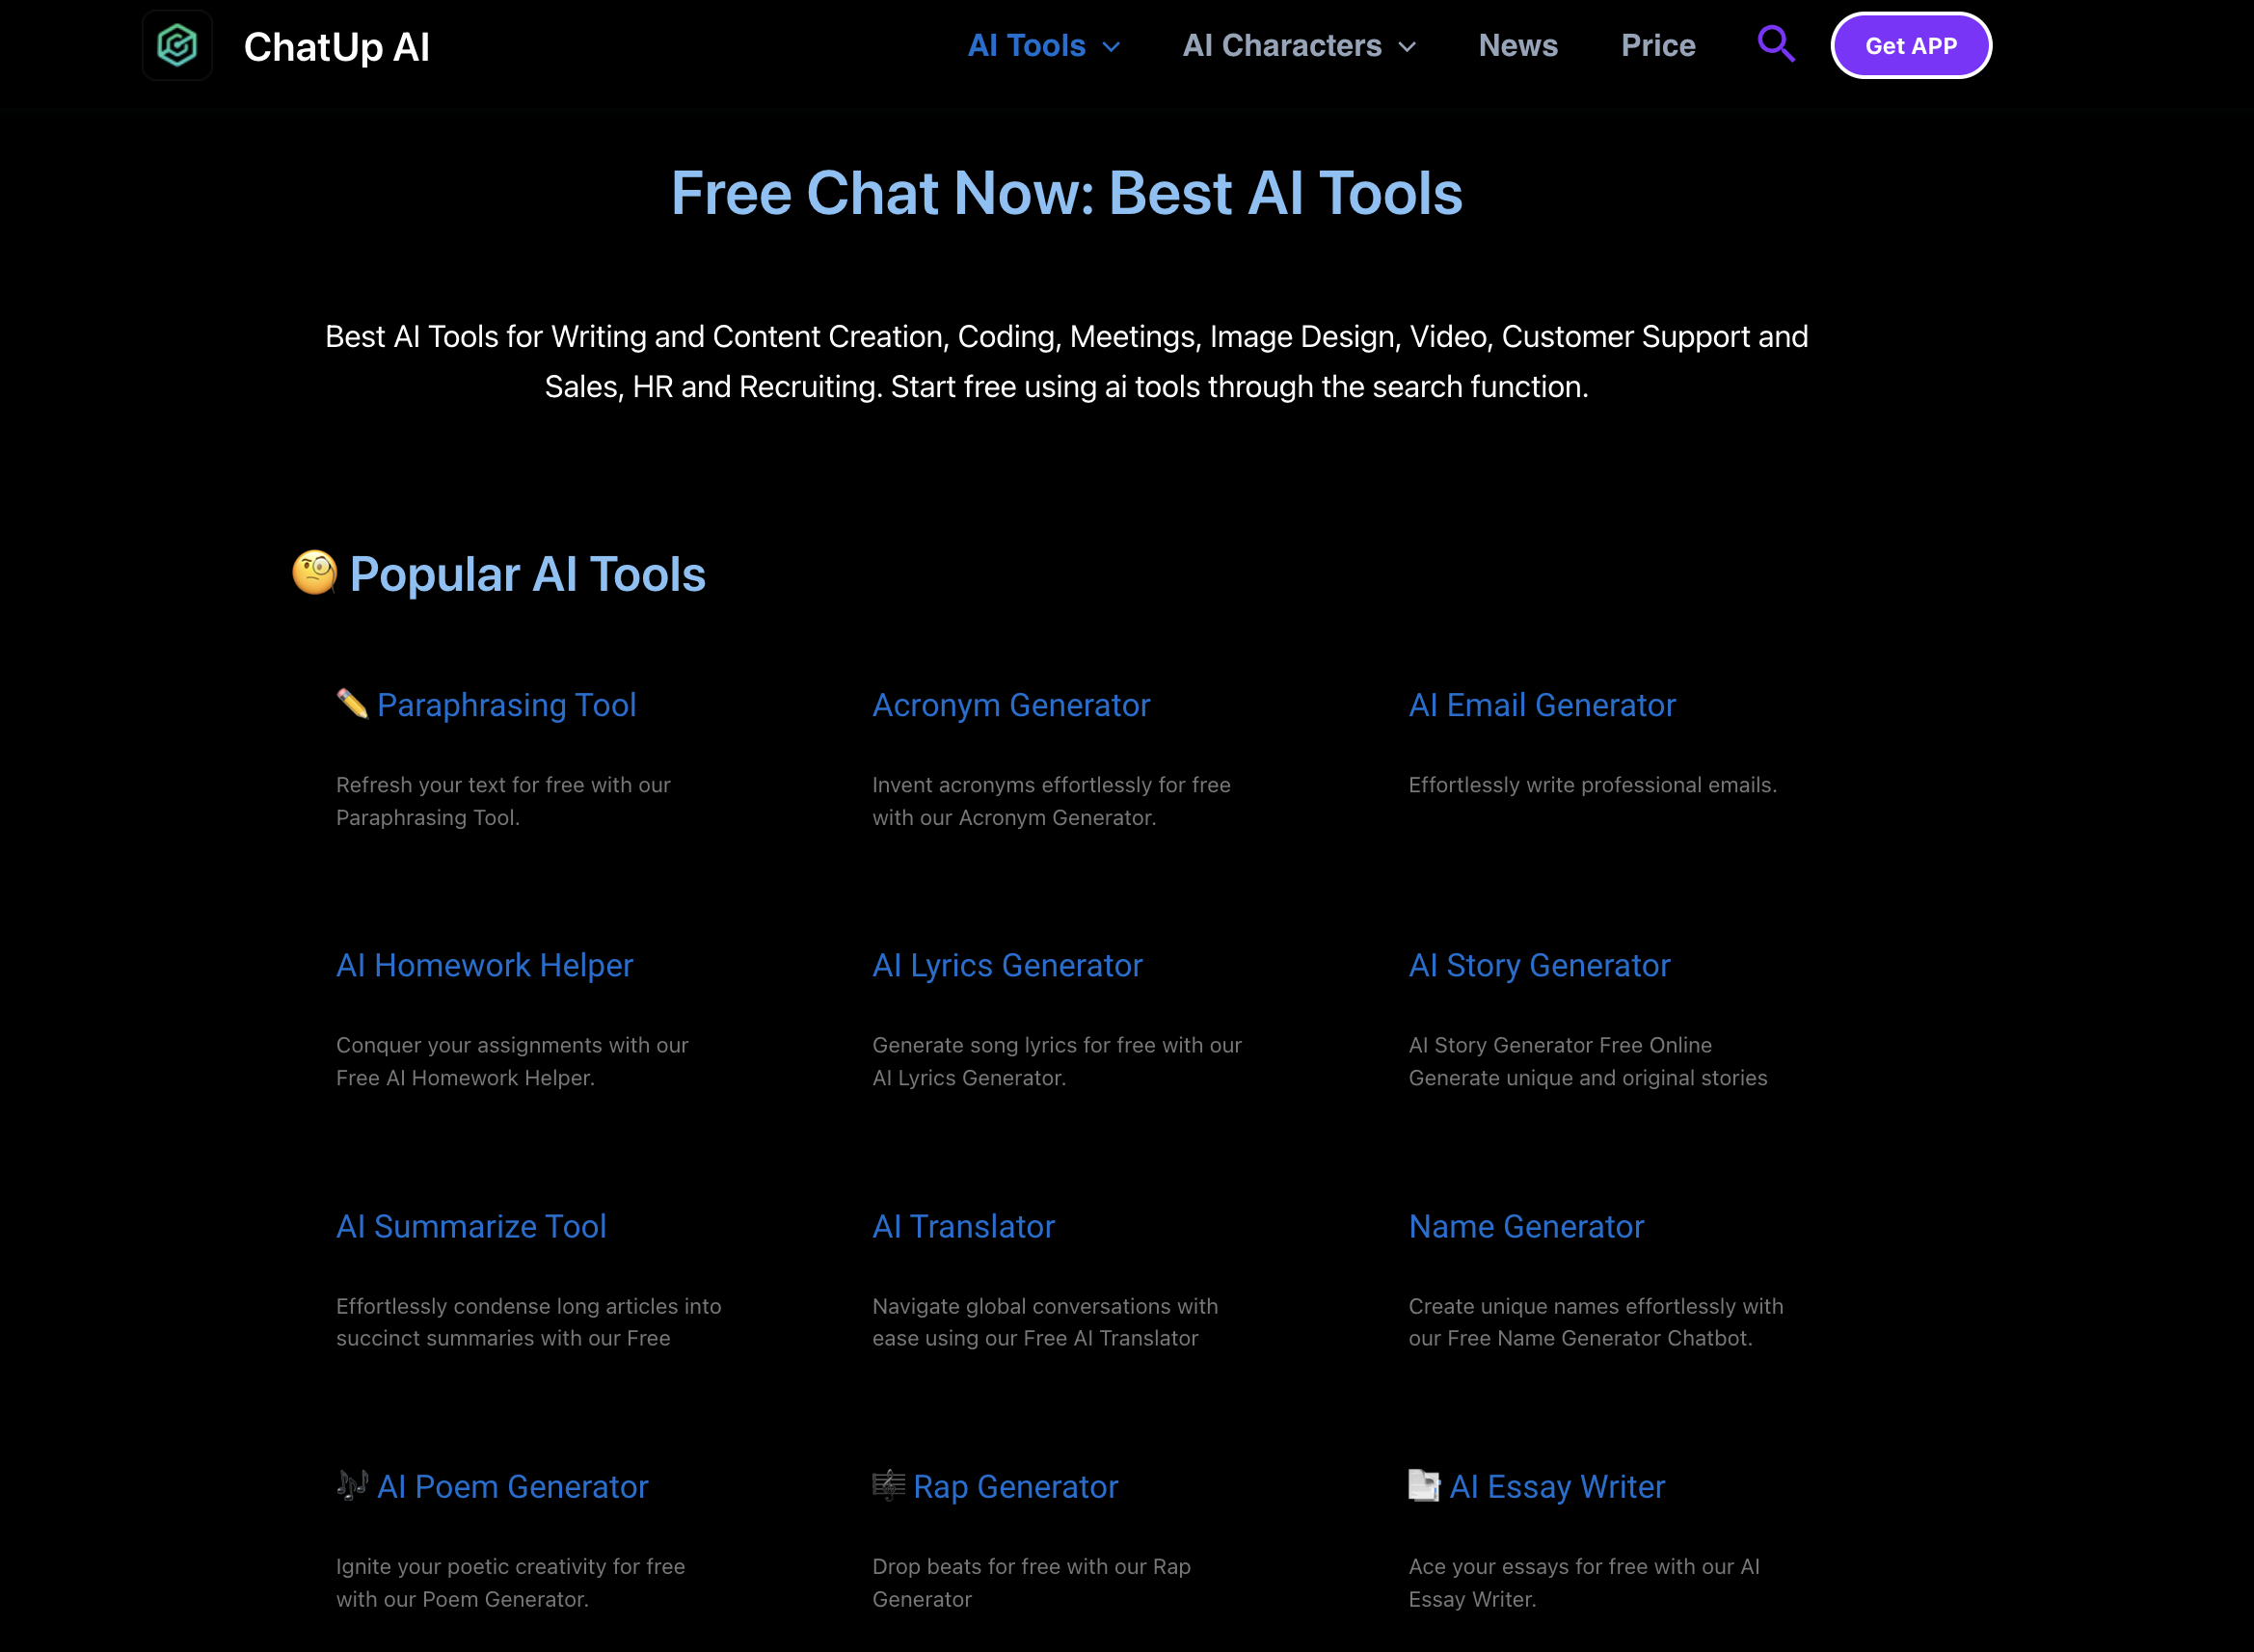 ChatUp AI Free AI Tools